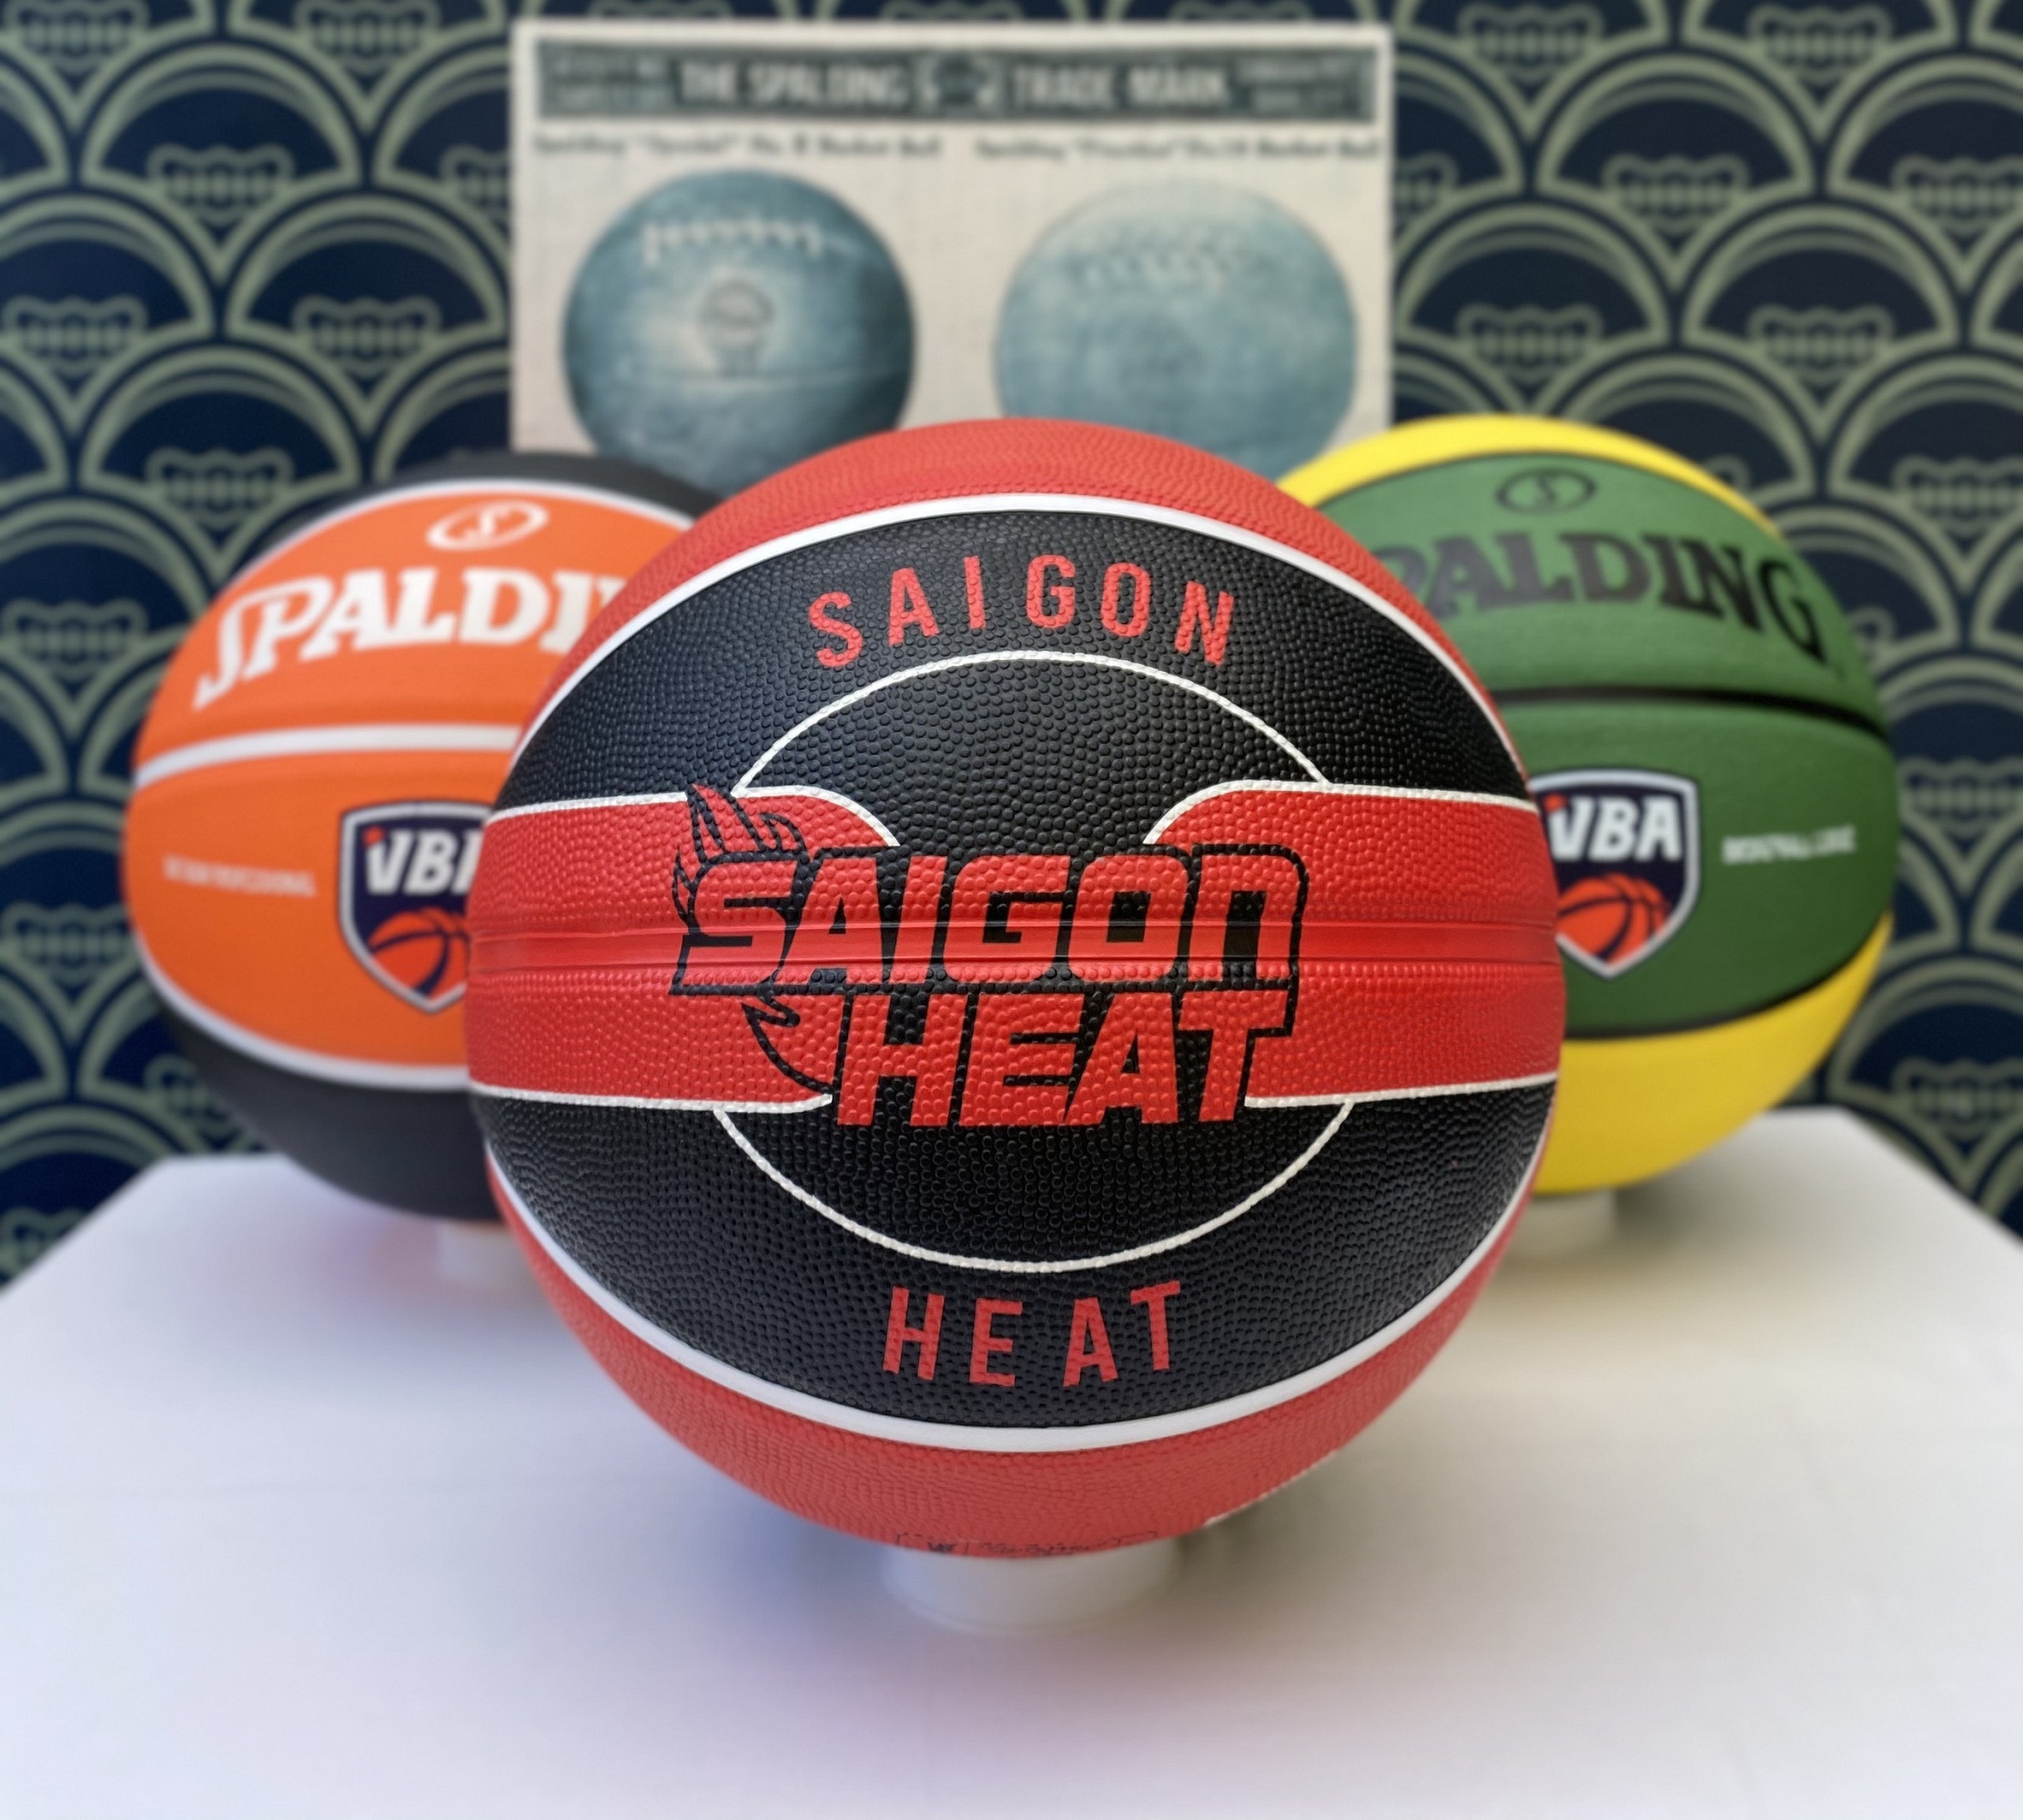 Bóng rổ Spalding SAIGON HEAT VBA (2021) size7 cao su Giải bóng rổ các câu lạc bộ chuyên nghiệp Việt Nam